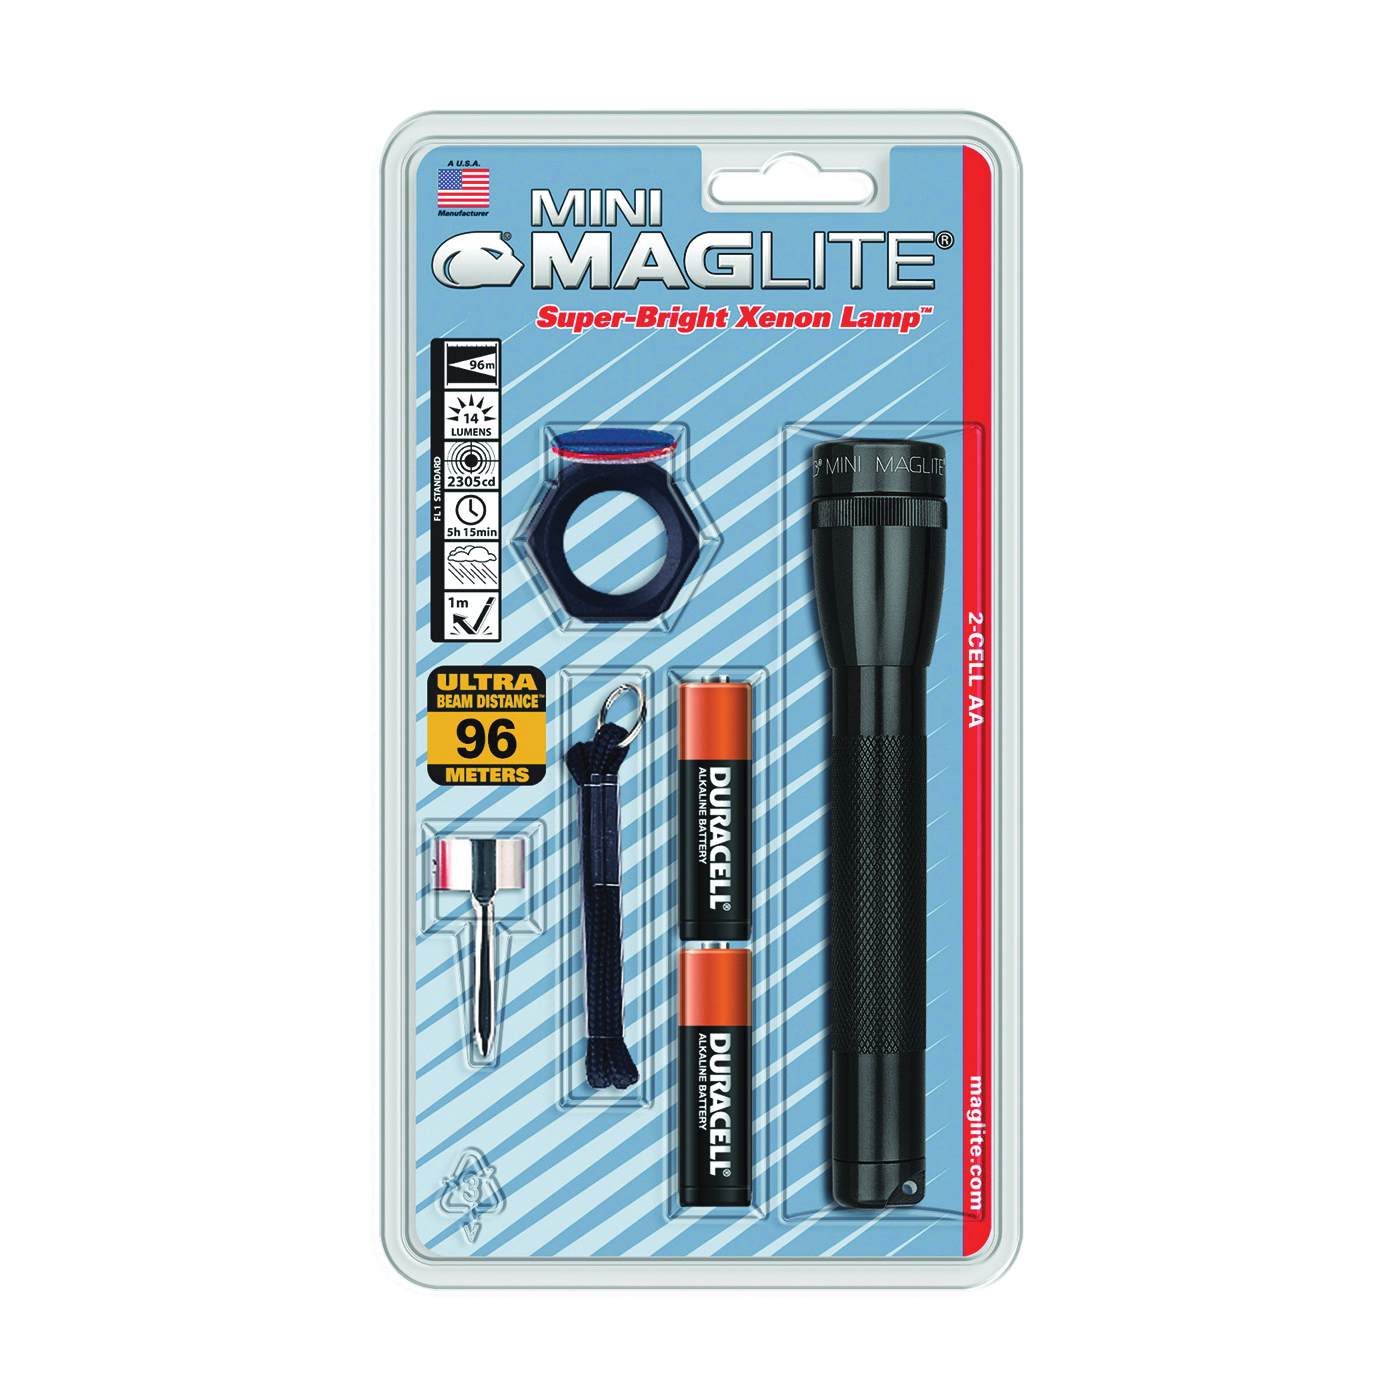 Maglite M2A01C